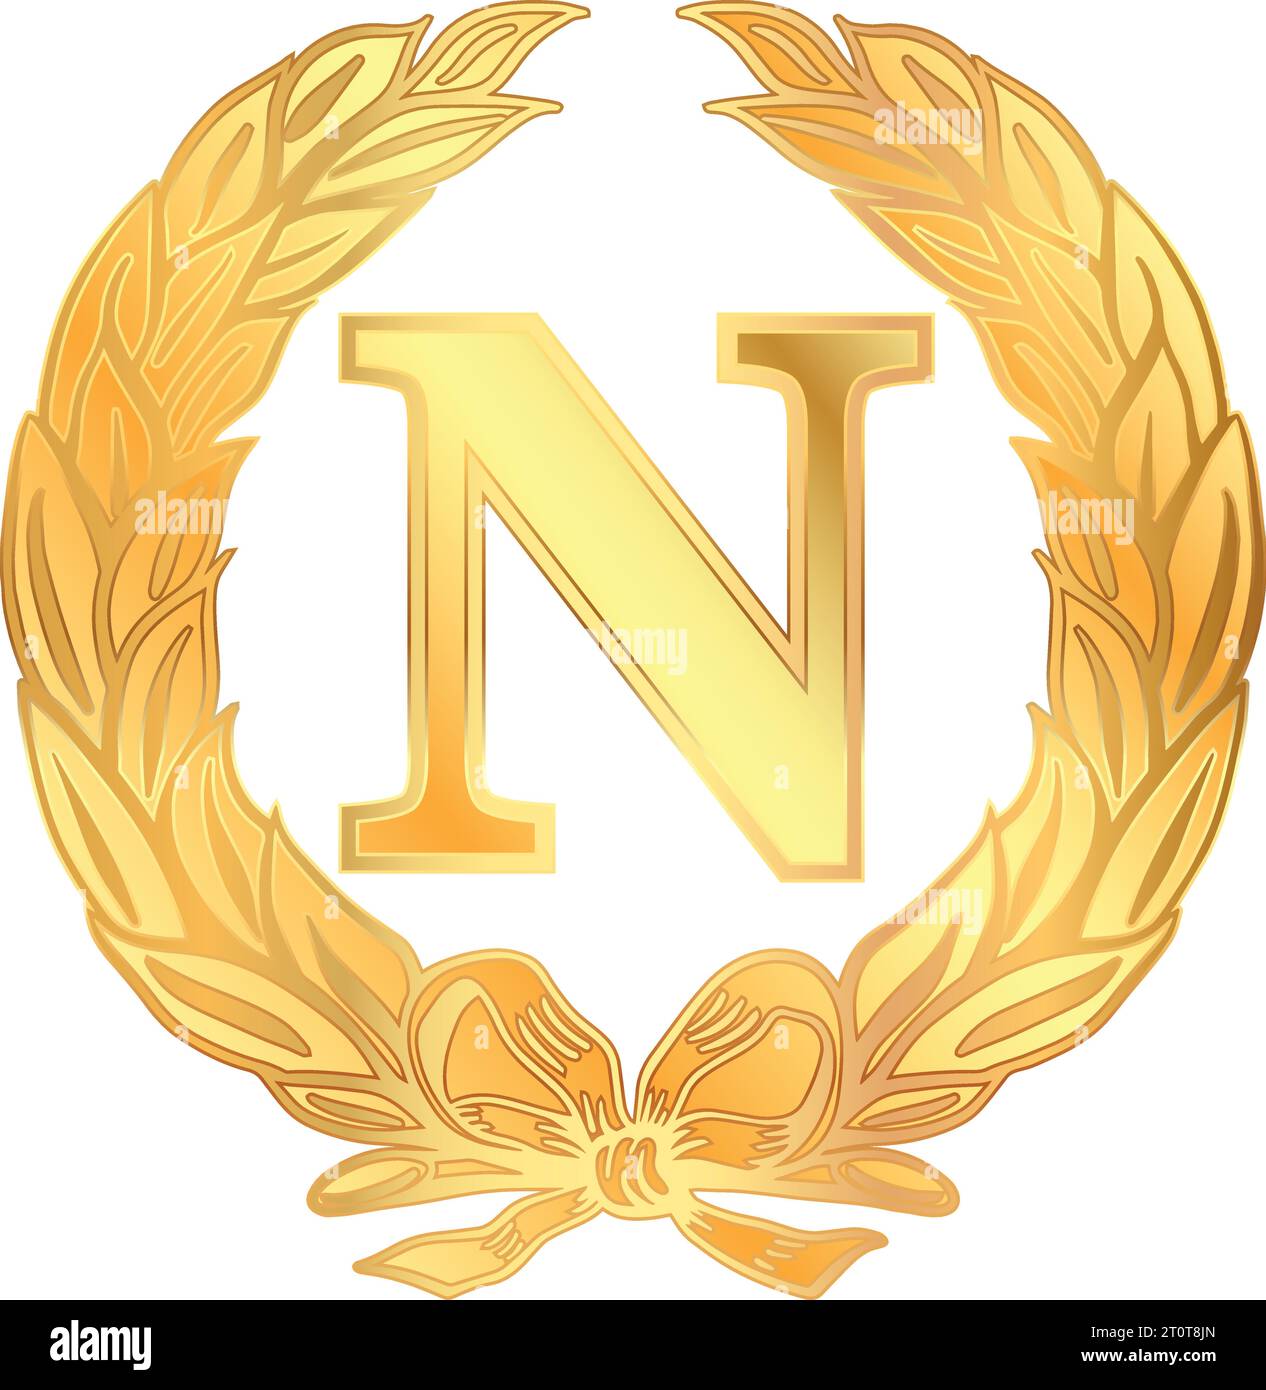 Lettre napoléonienne N symbole à l'intérieur d'une couronne de Laurier, illustration vectorielle dorée sur fond blanc Illustration de Vecteur